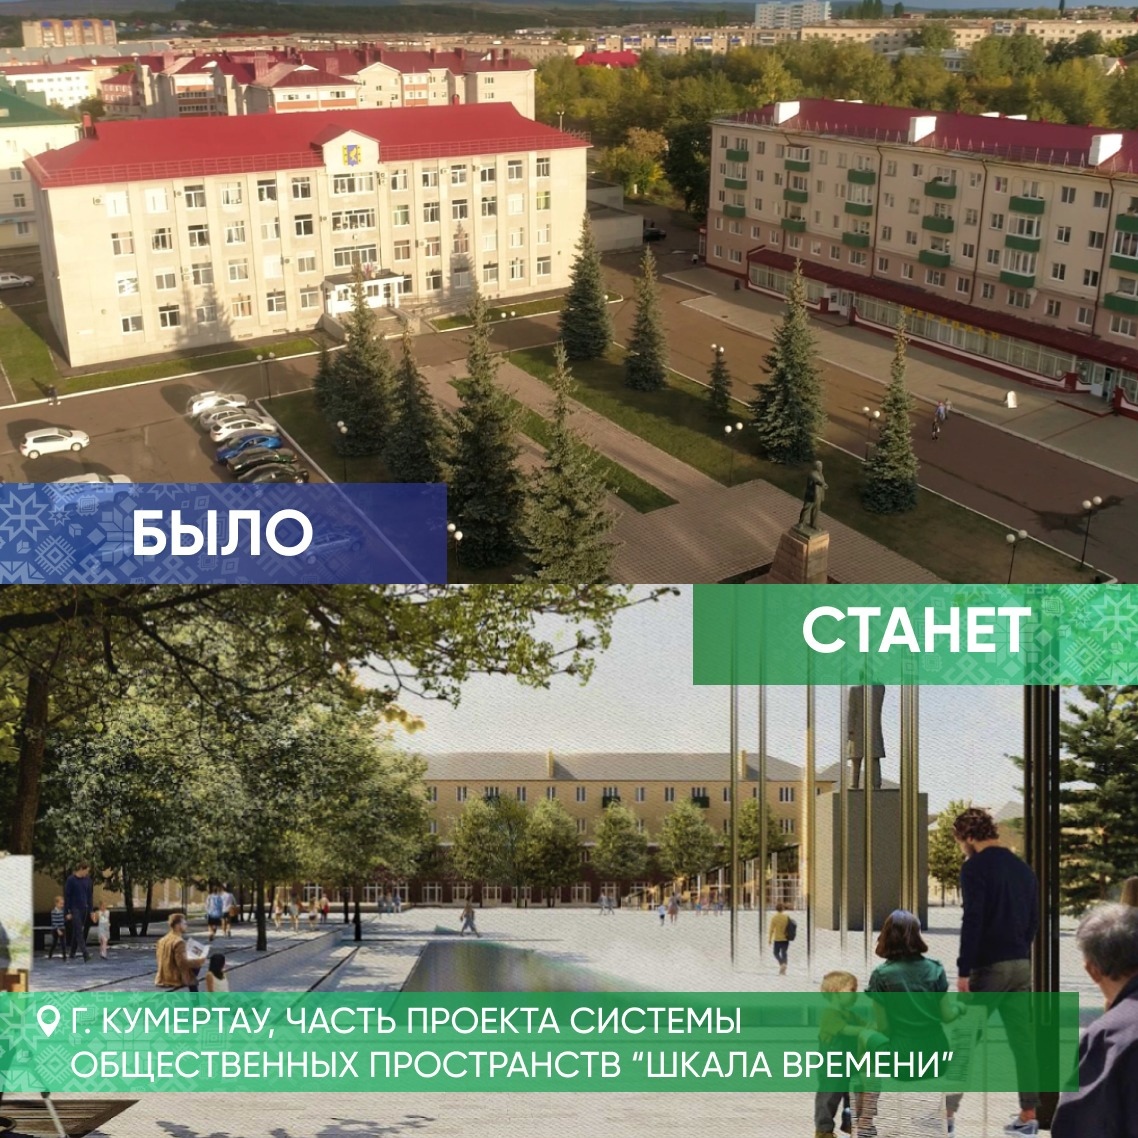 Победителями Всероссийского конкурса стали шесть башкирских городов